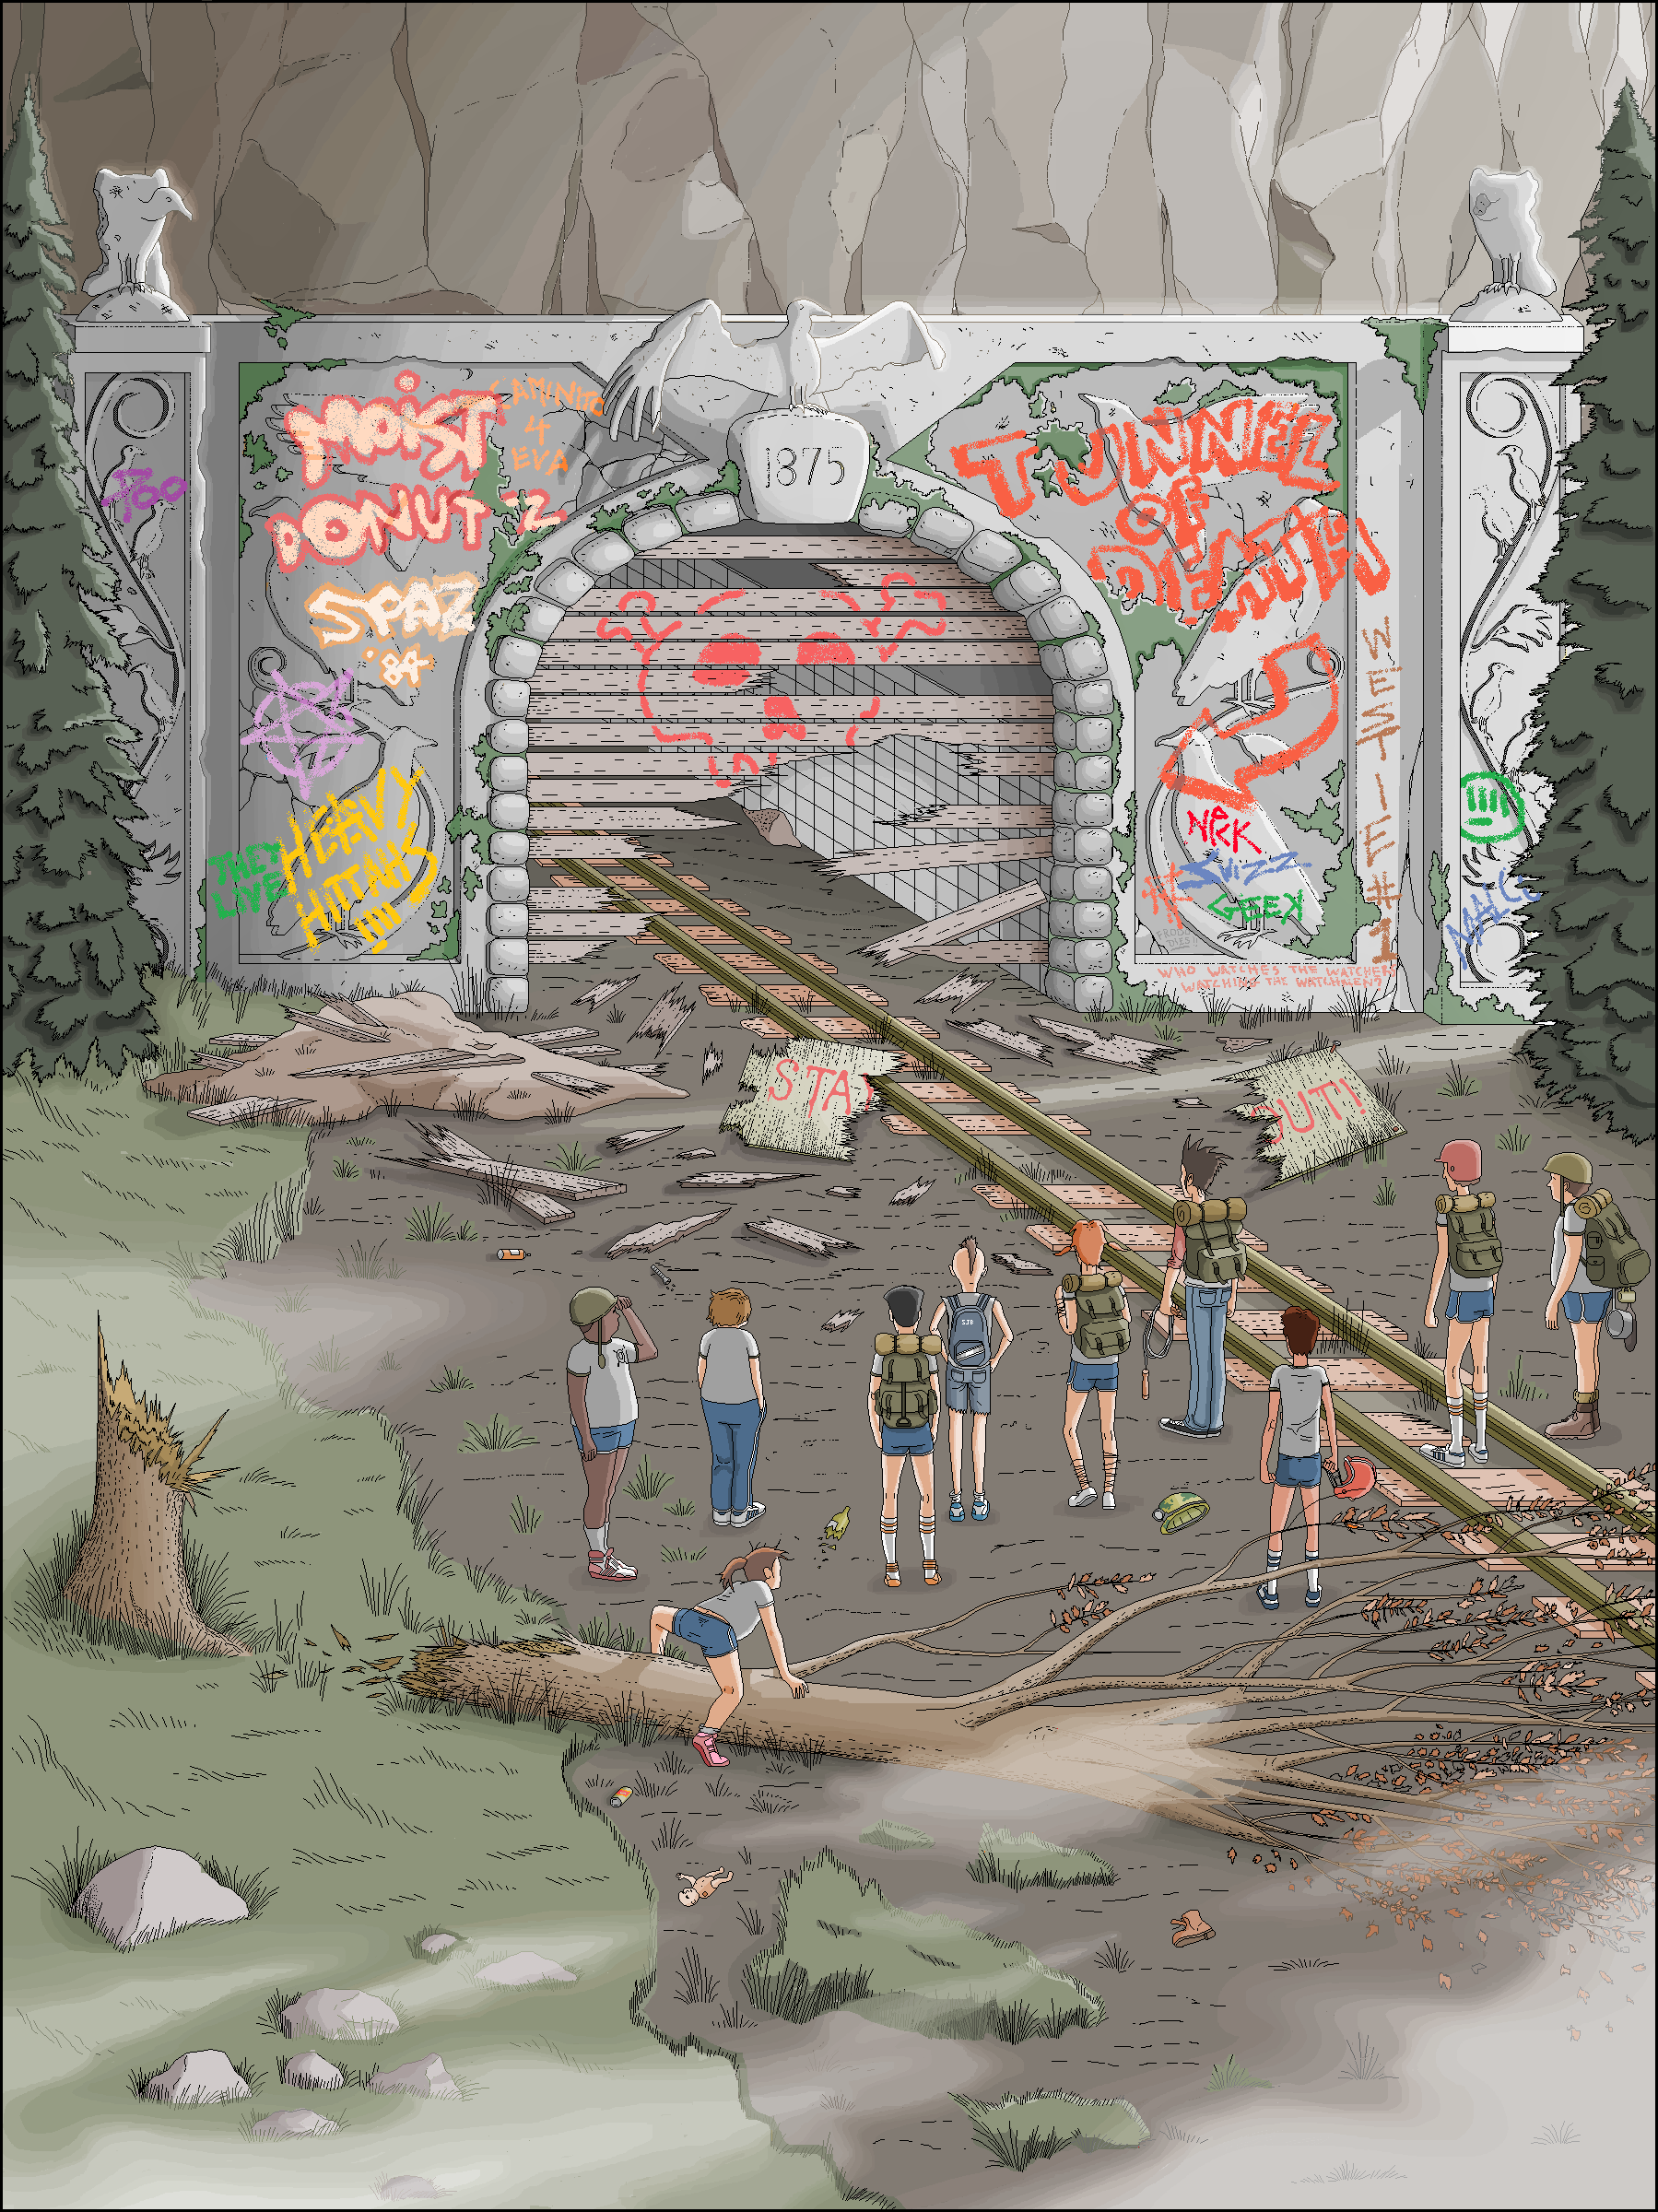 Ilustração do livro “Camp Redblood And The Essential Revenge”, de Pat Hines, feita no MS Paint.